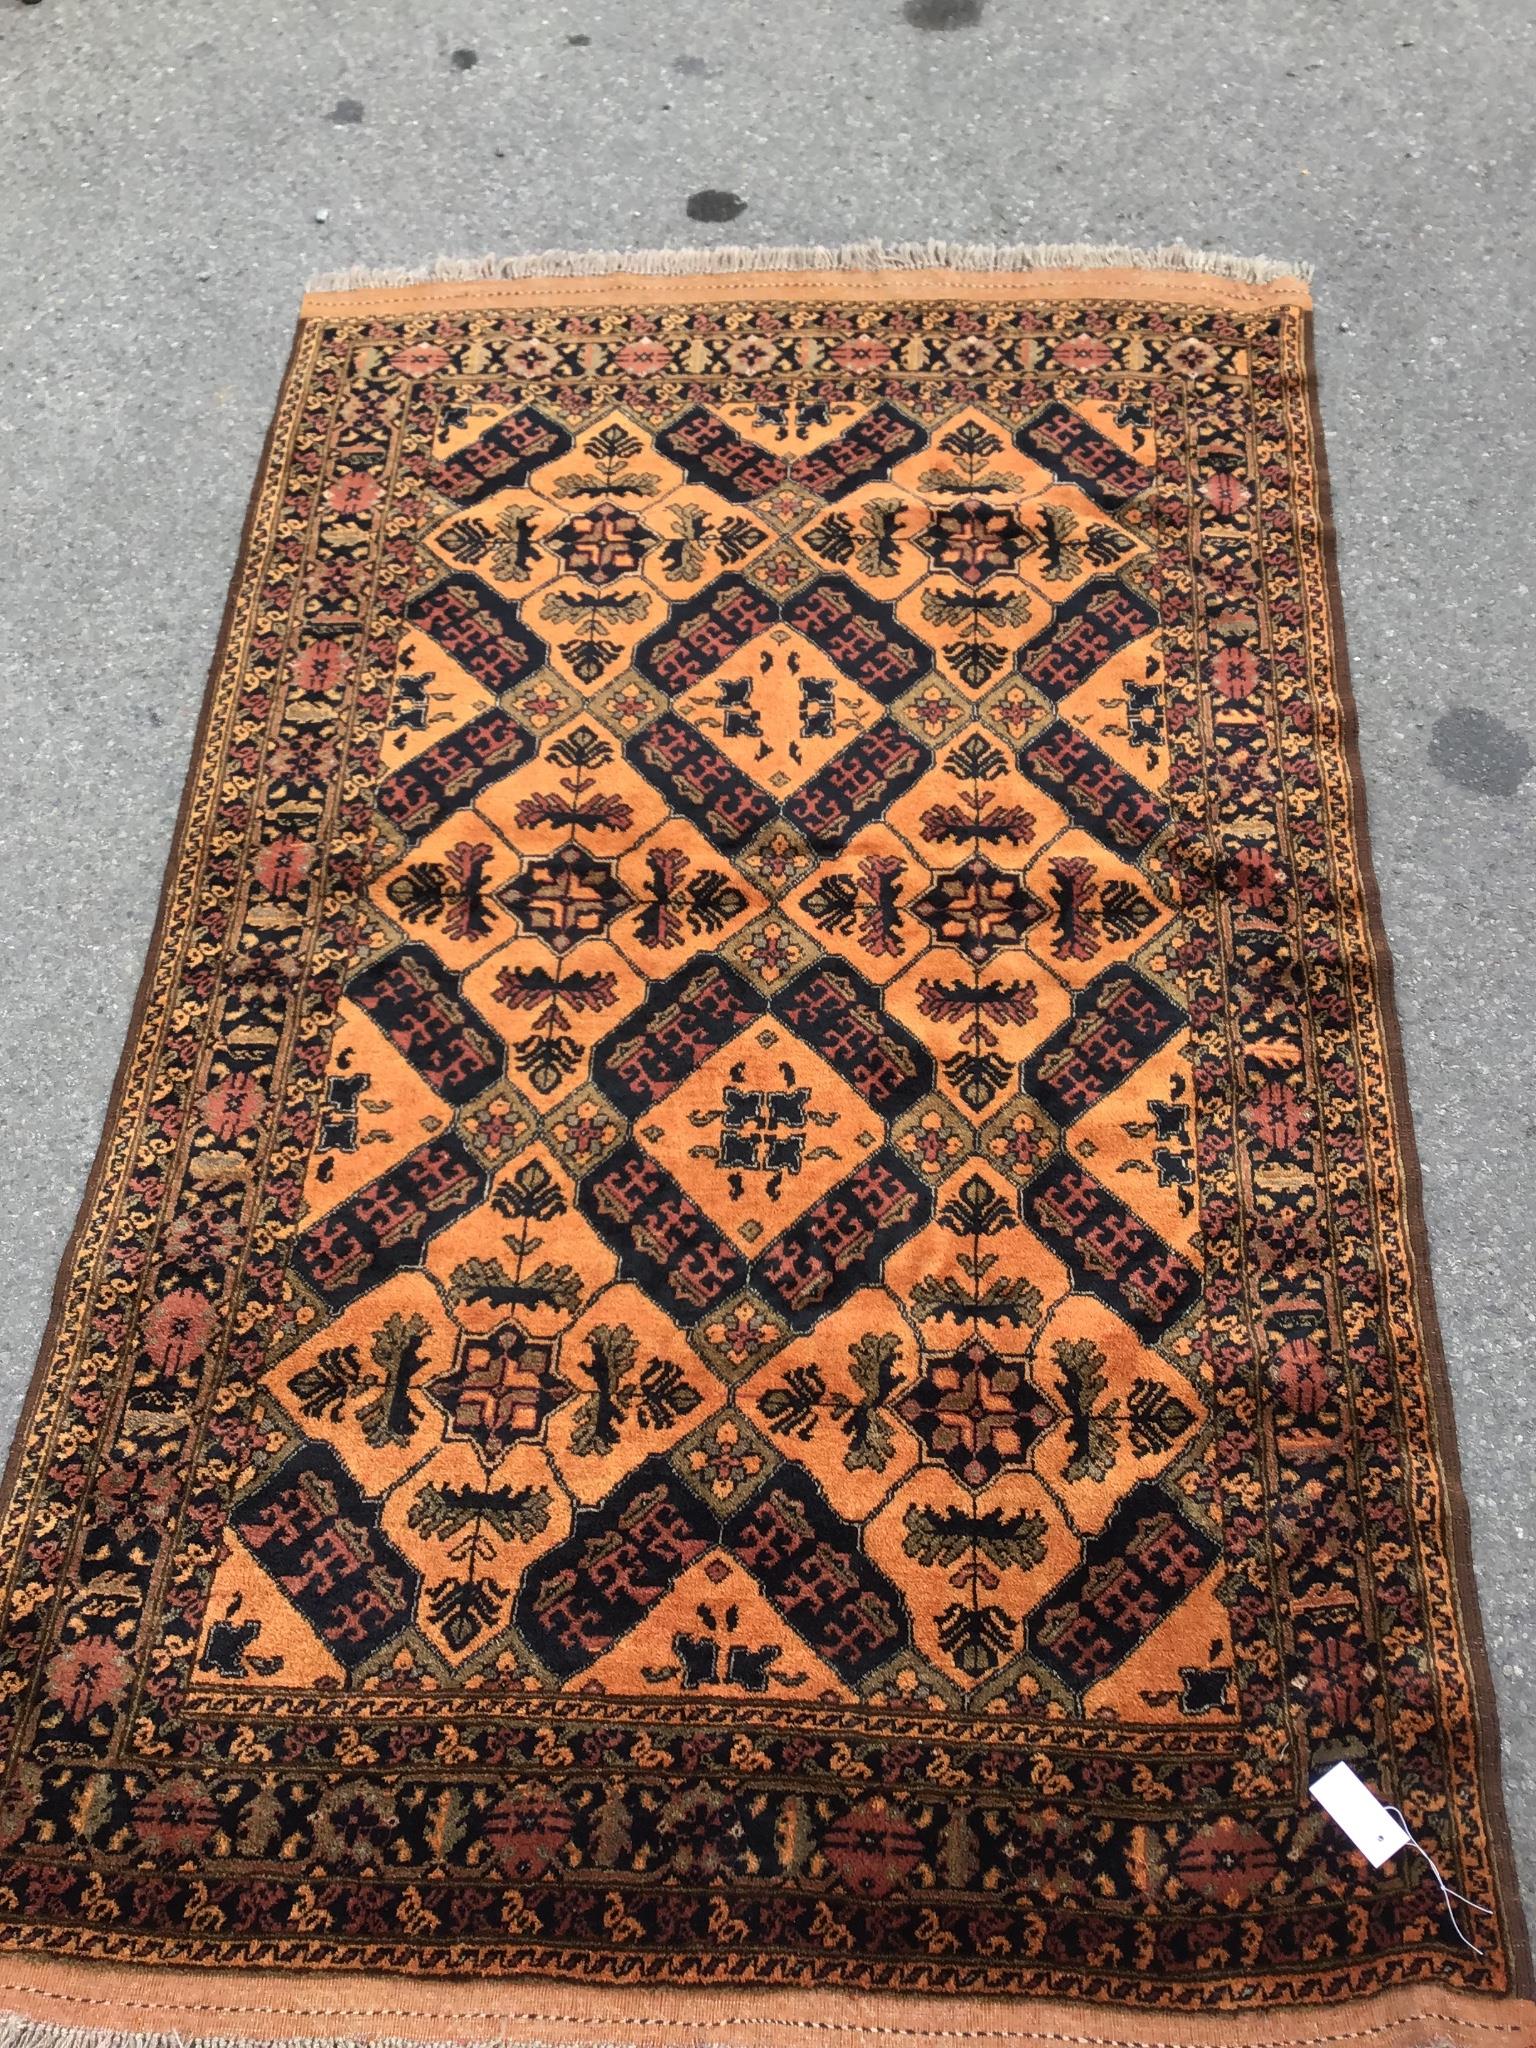 An Afghan gold ground rug, 186 x 124cm